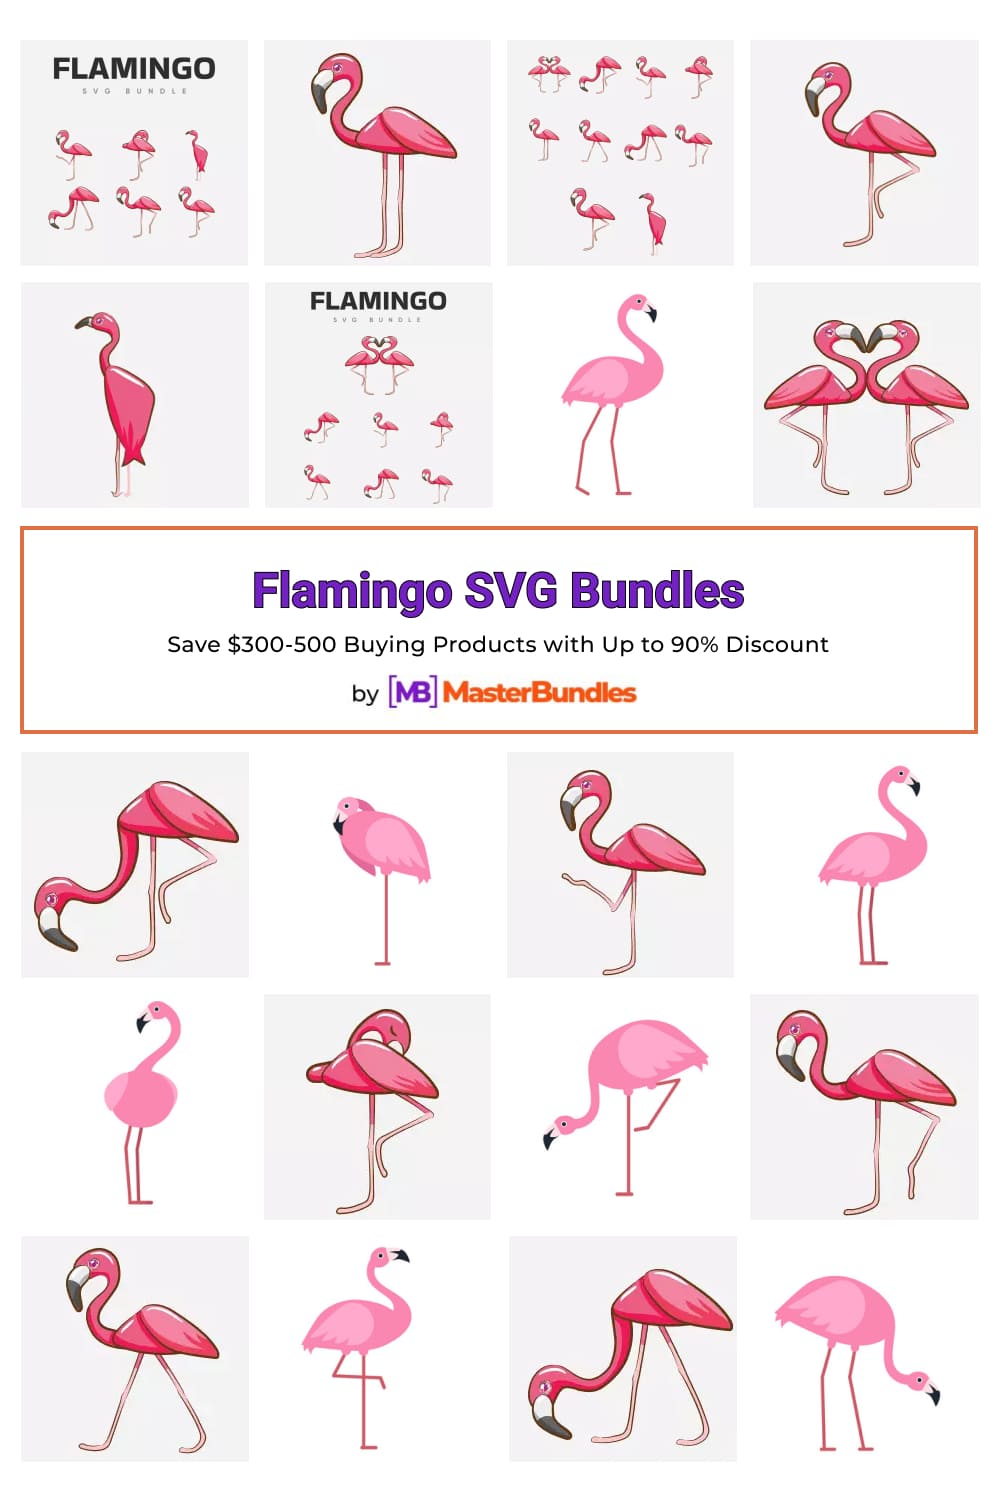 Flamingo SVG Bundles for Pinterest.